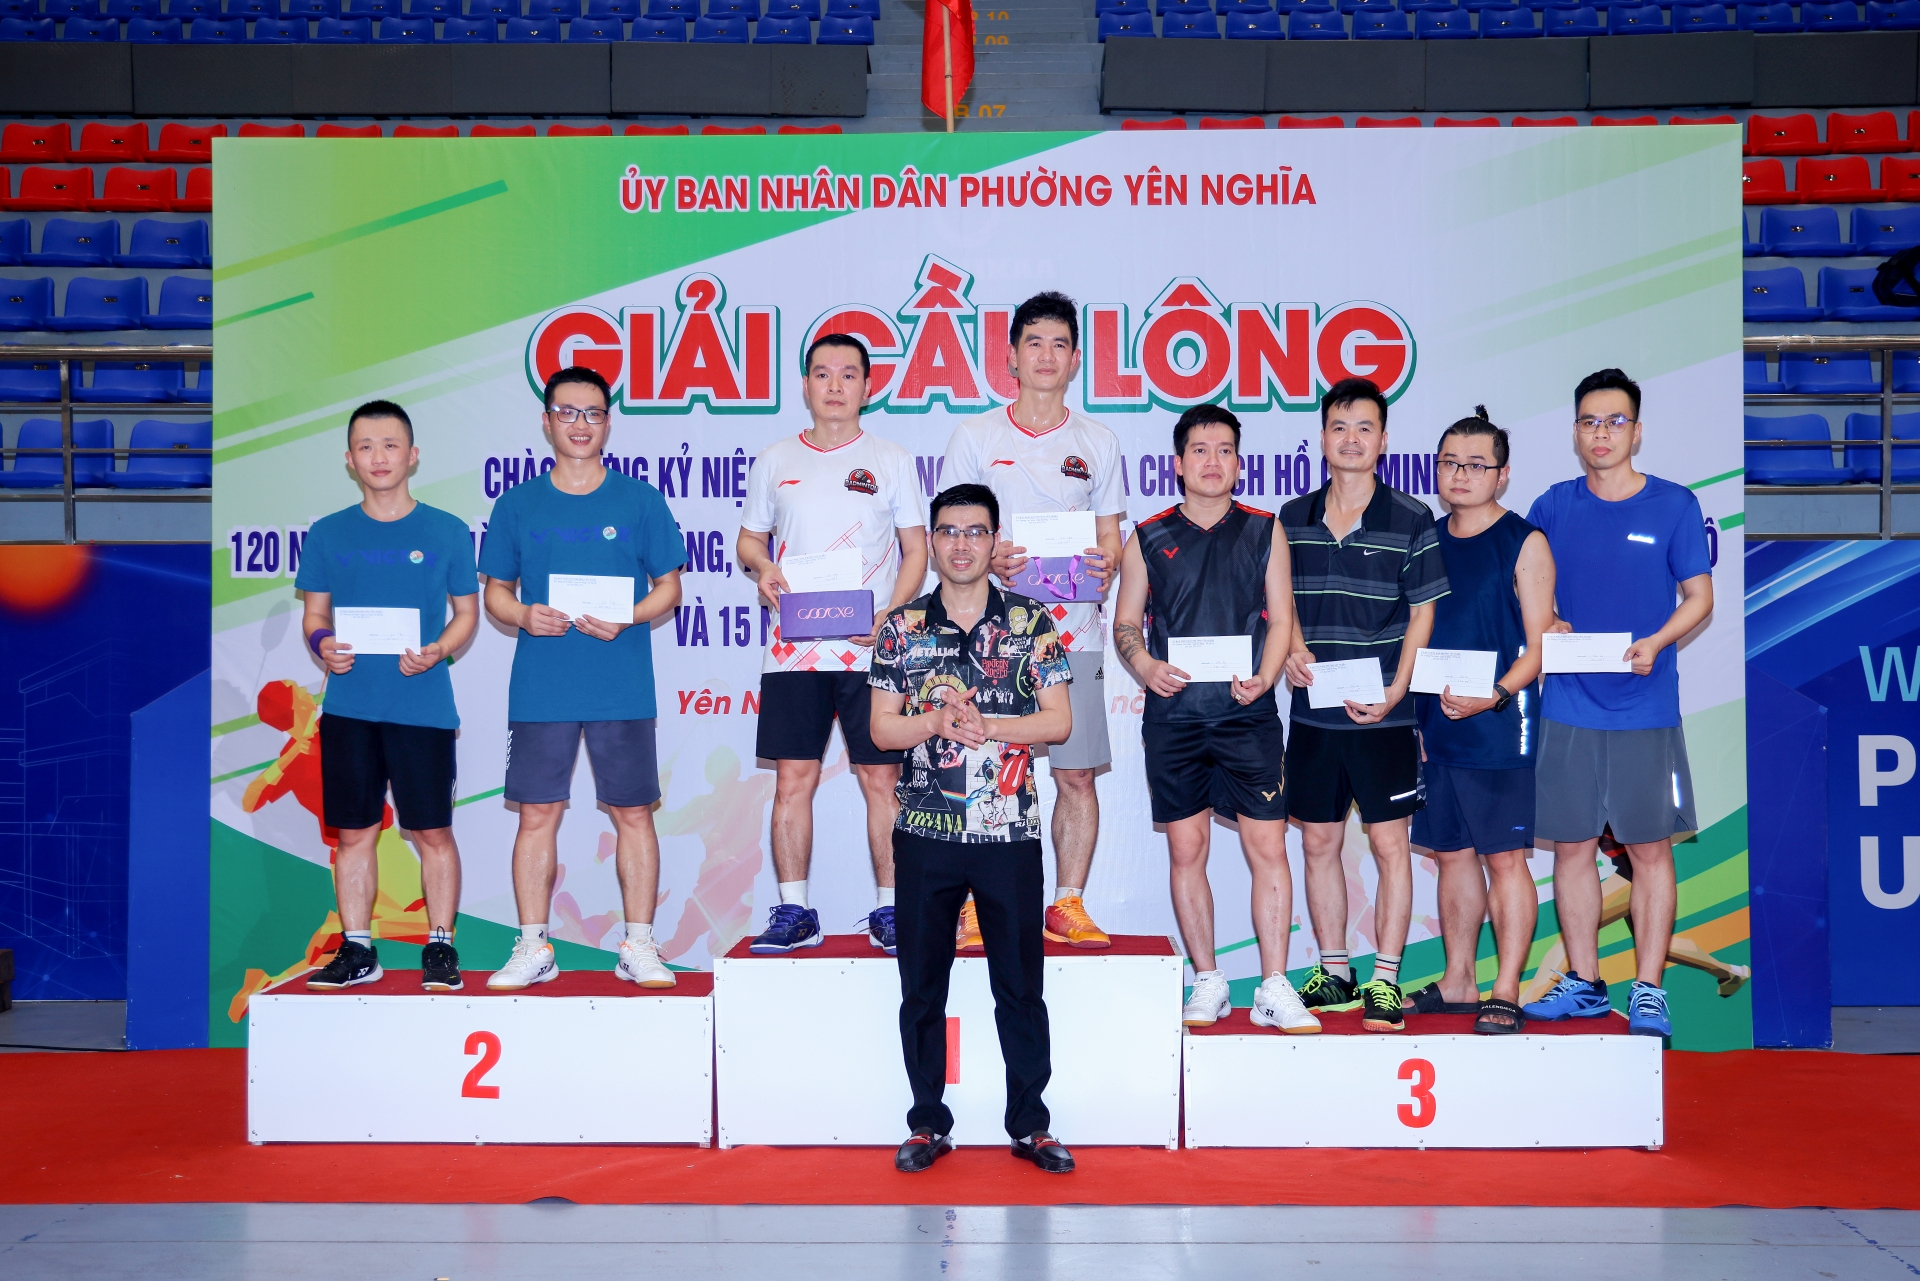 Giải Cầu lông các Câu lạc bộ phường Yên Nghĩa thành công, tạo sự chuyển biến mạnh mẽ trong phong trào thể dục thể thao